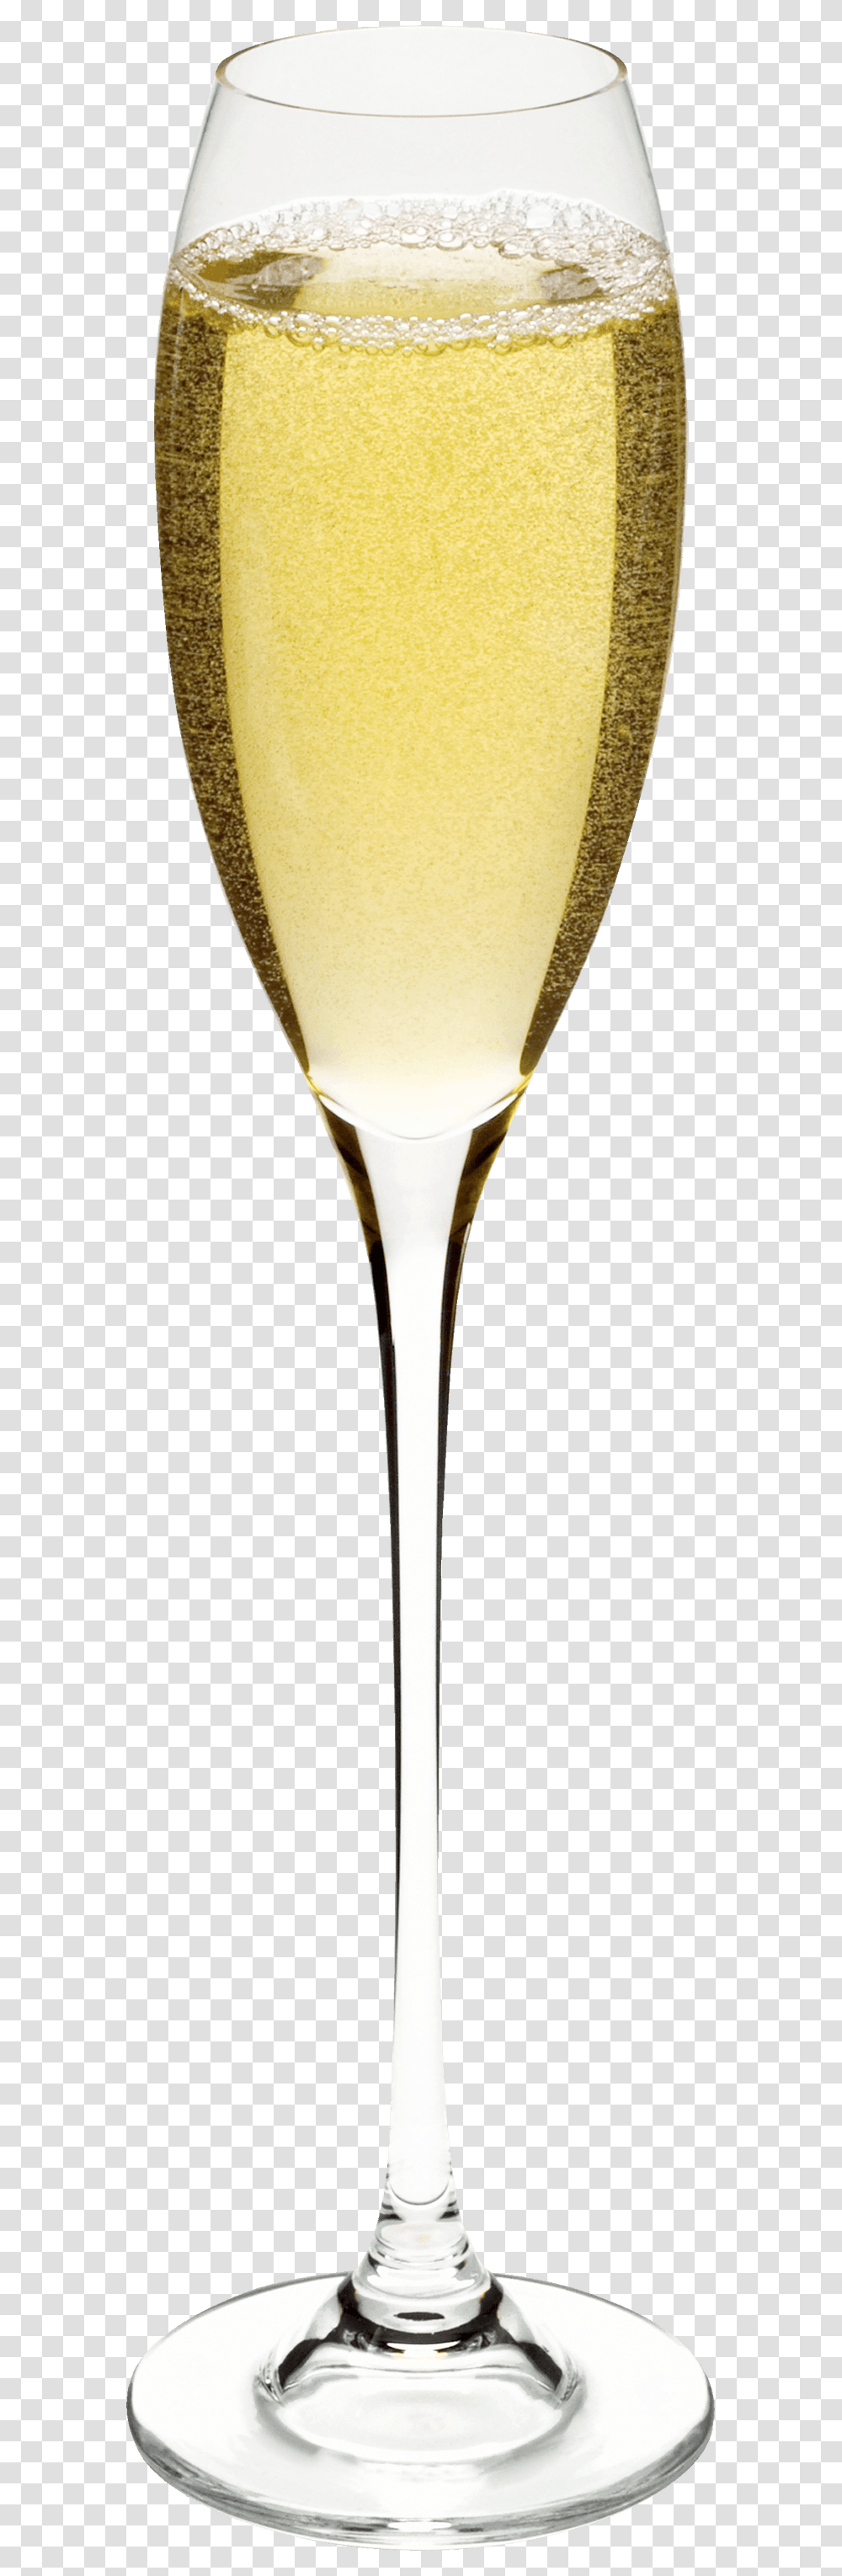 Champagne Glass Bokal Shampanskogo, Cocktail, Alcohol, Beverage, Spoon Transparent Png